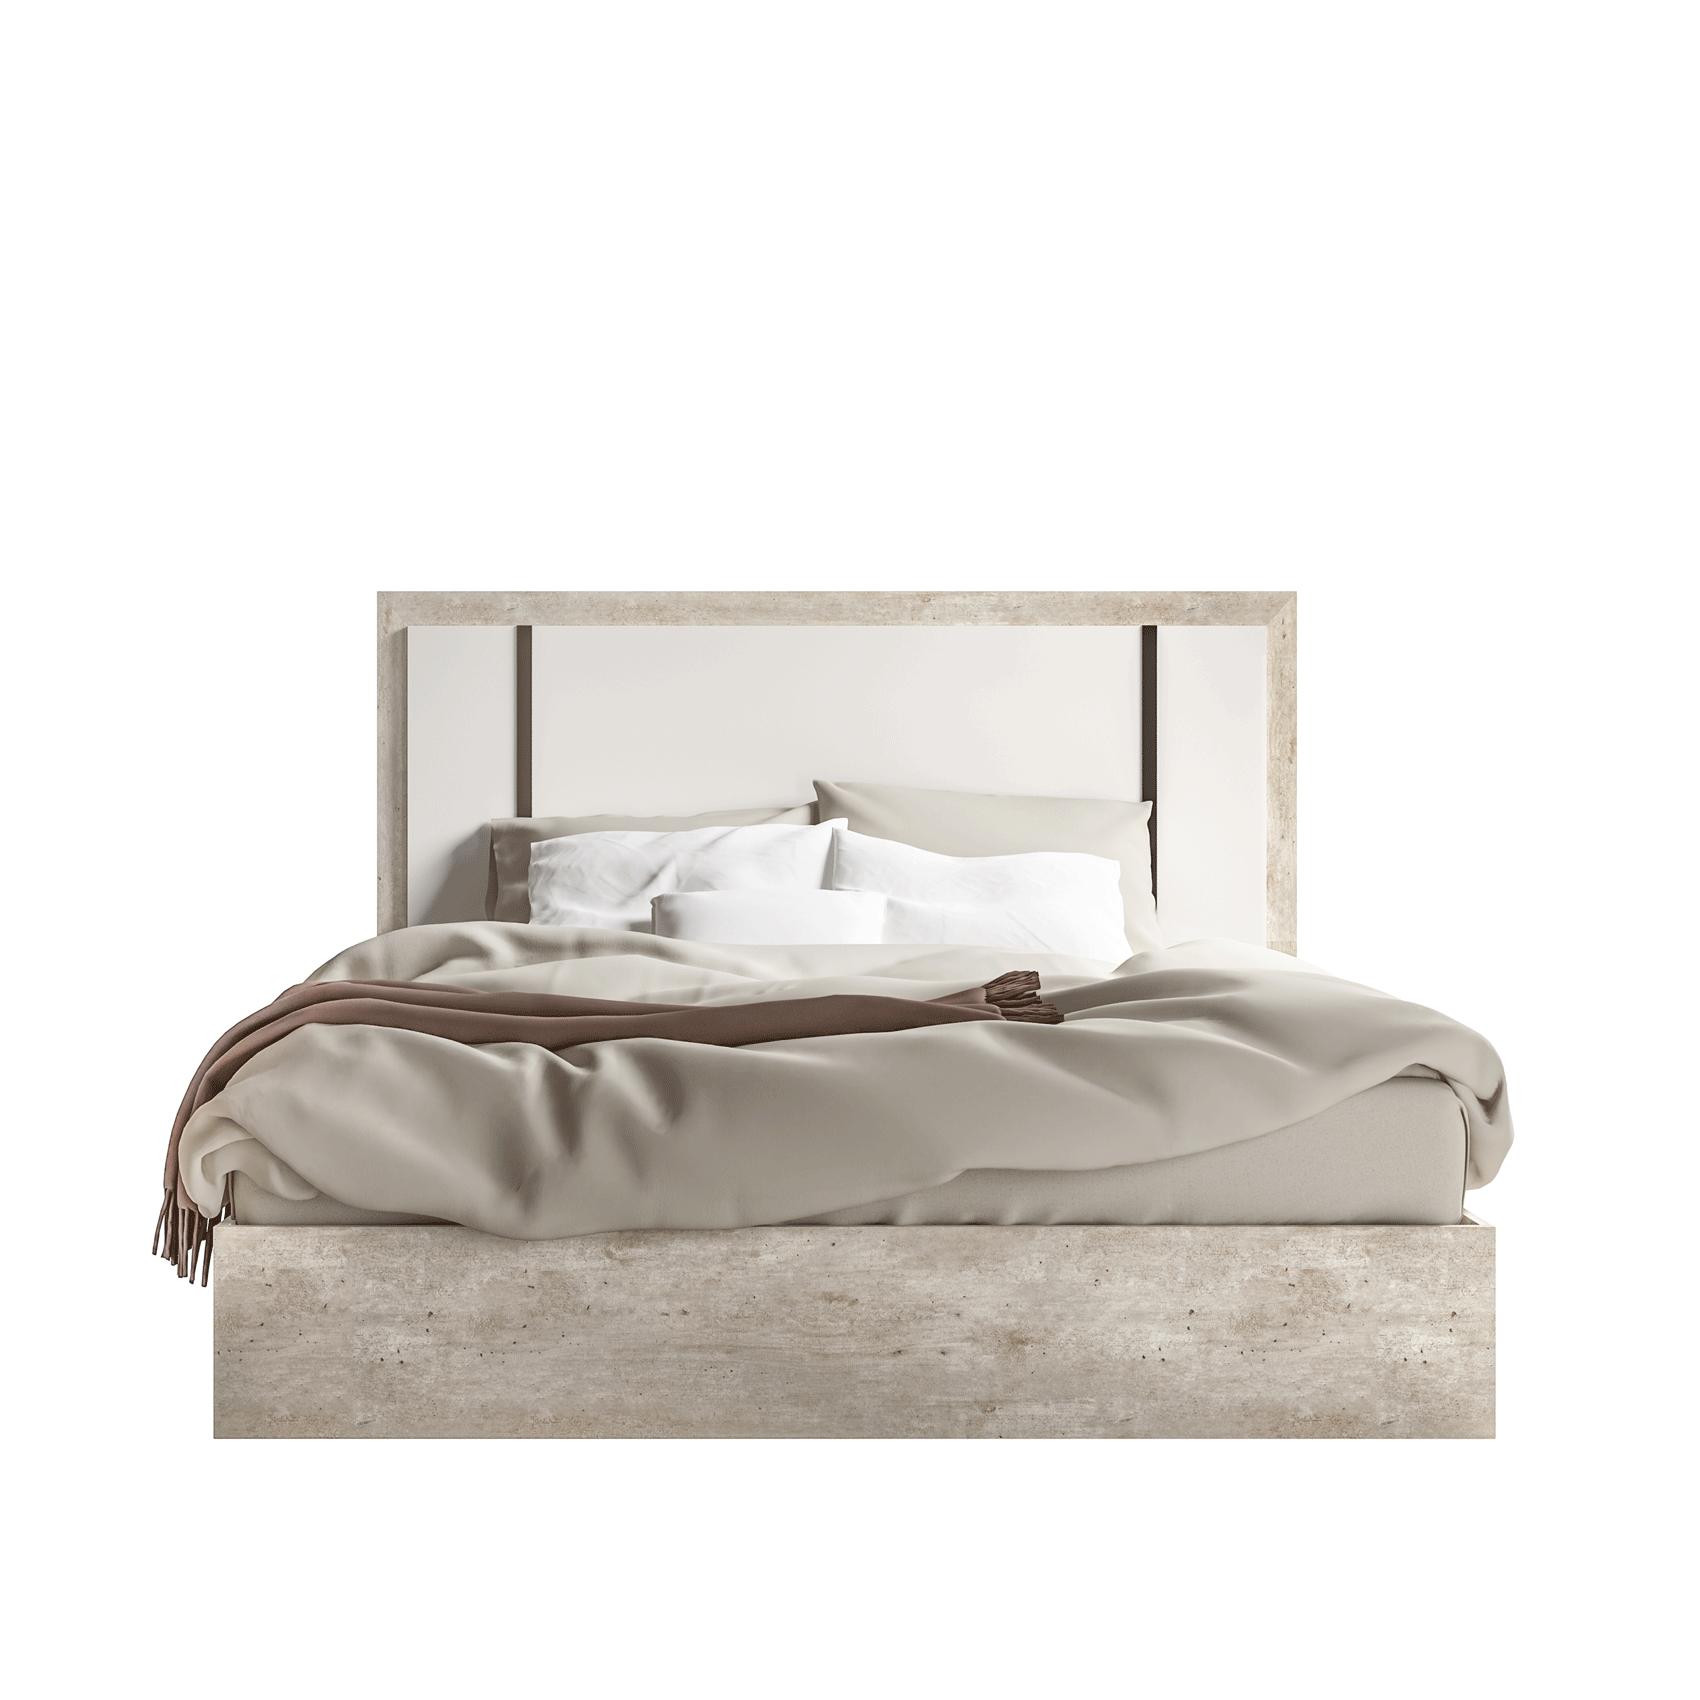 Contemporary, Modern Platform Bed Treviso Treviso-EK in White, Gray 